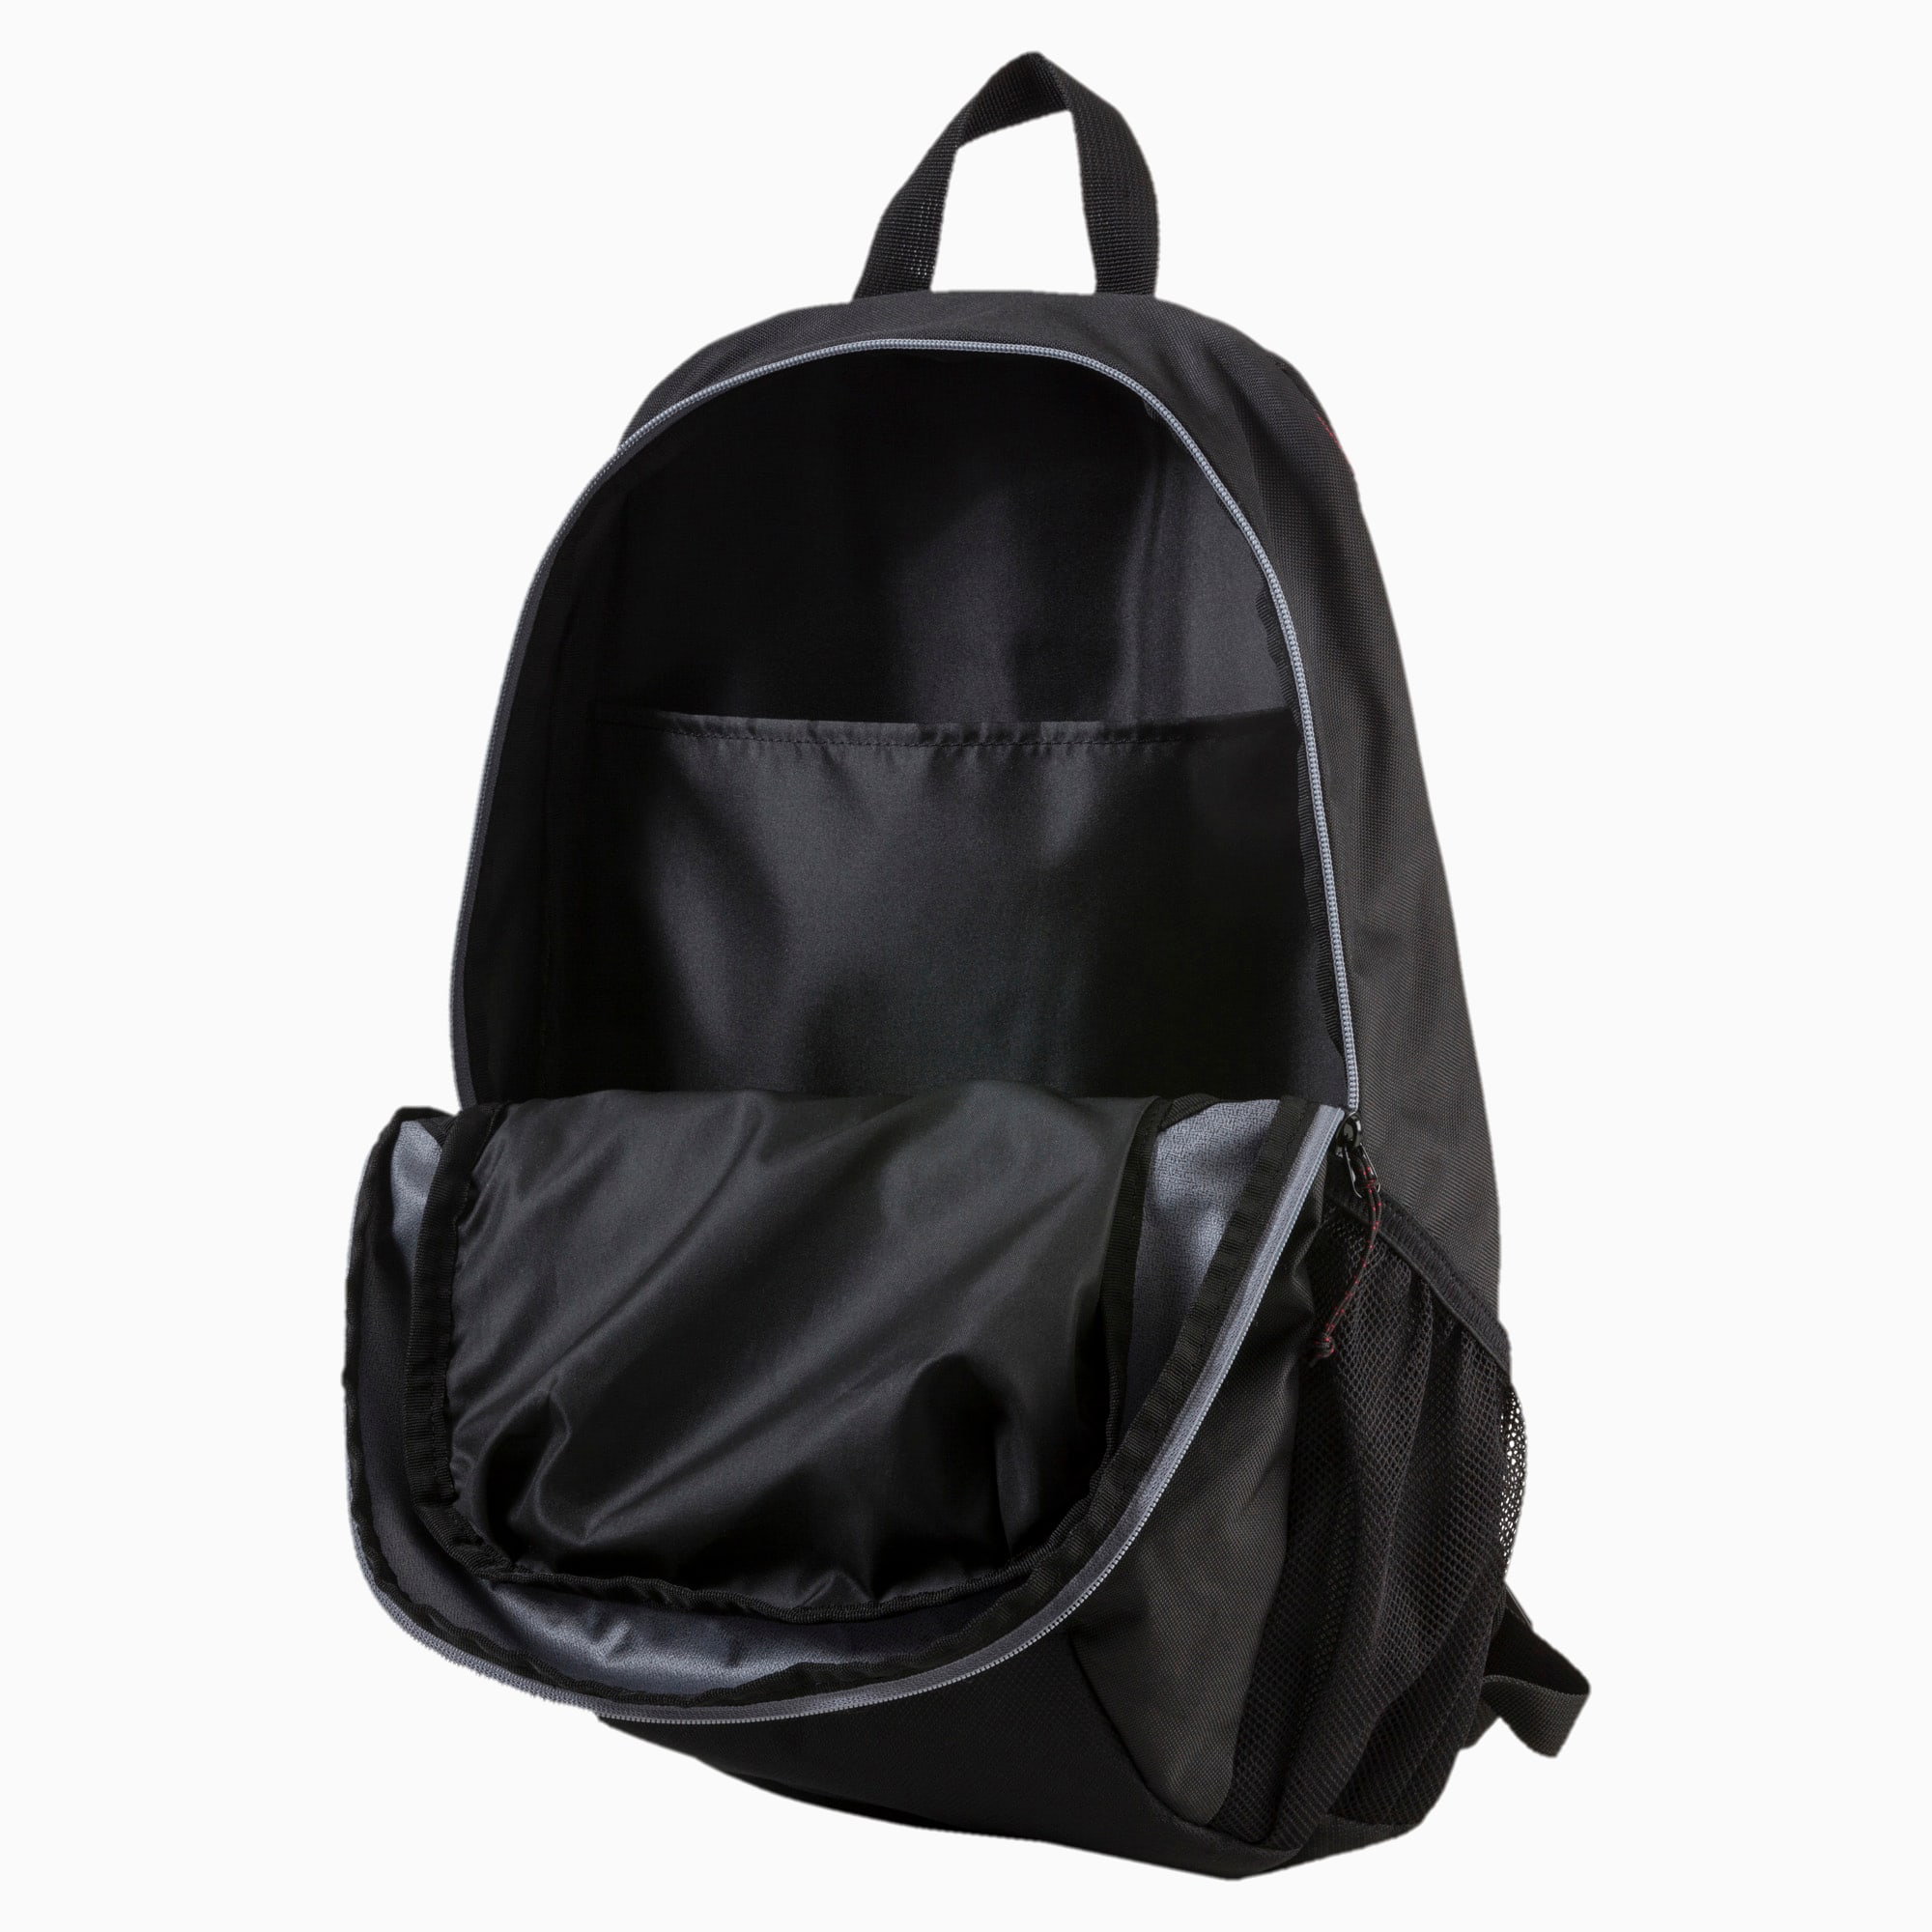 Evo Pro Backpack PUMA